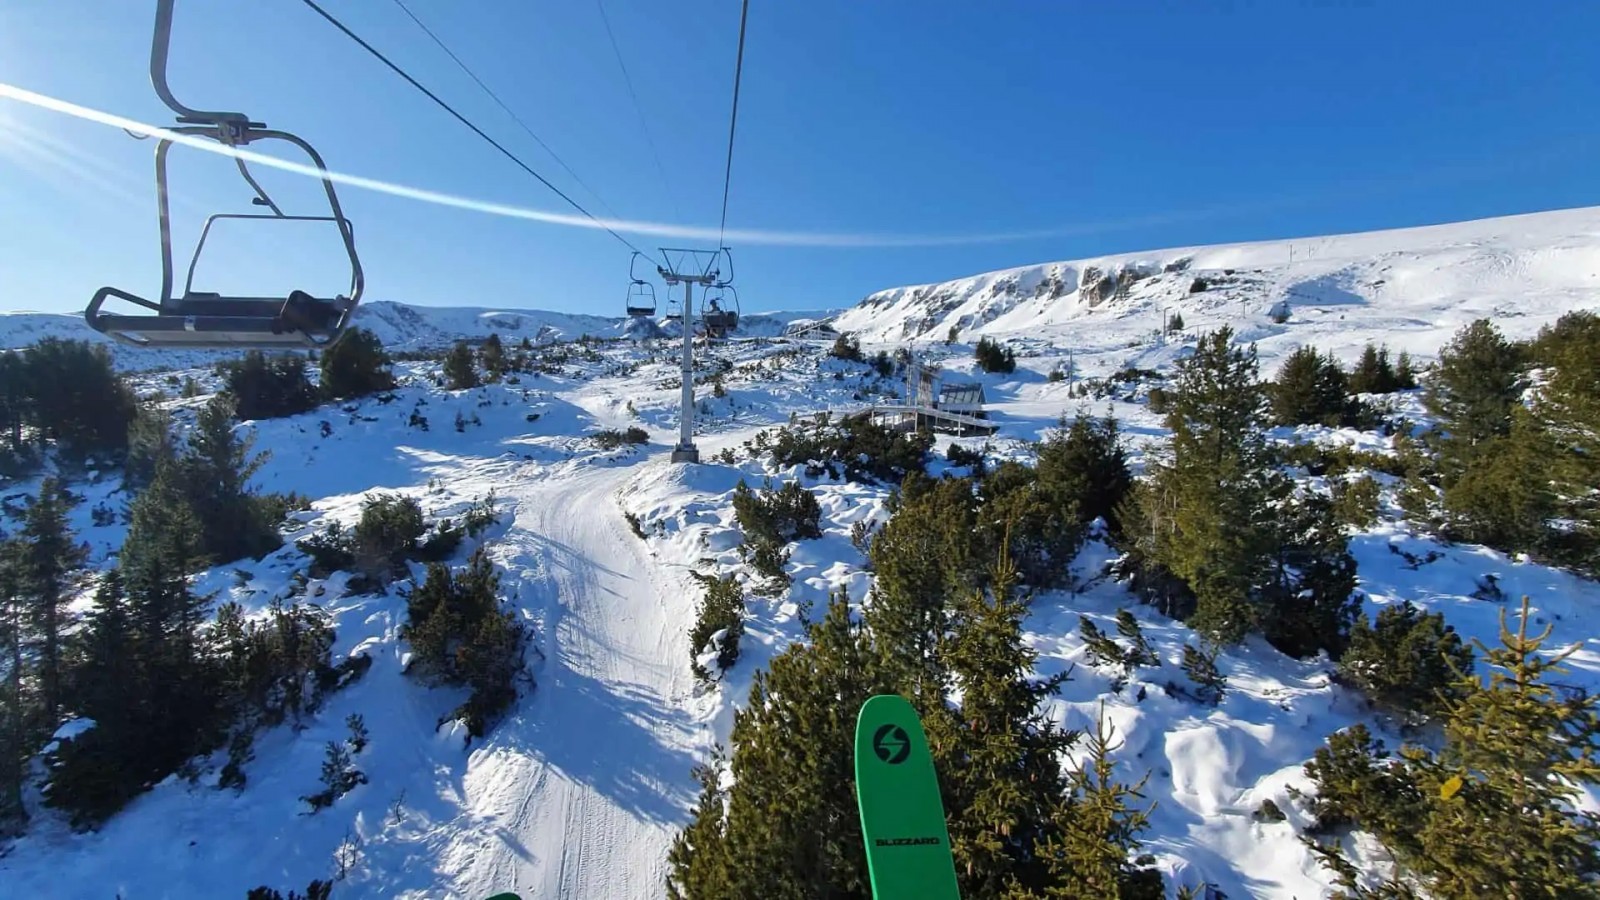 Bulgaria Ski Camp - alpin, tură, offpiste